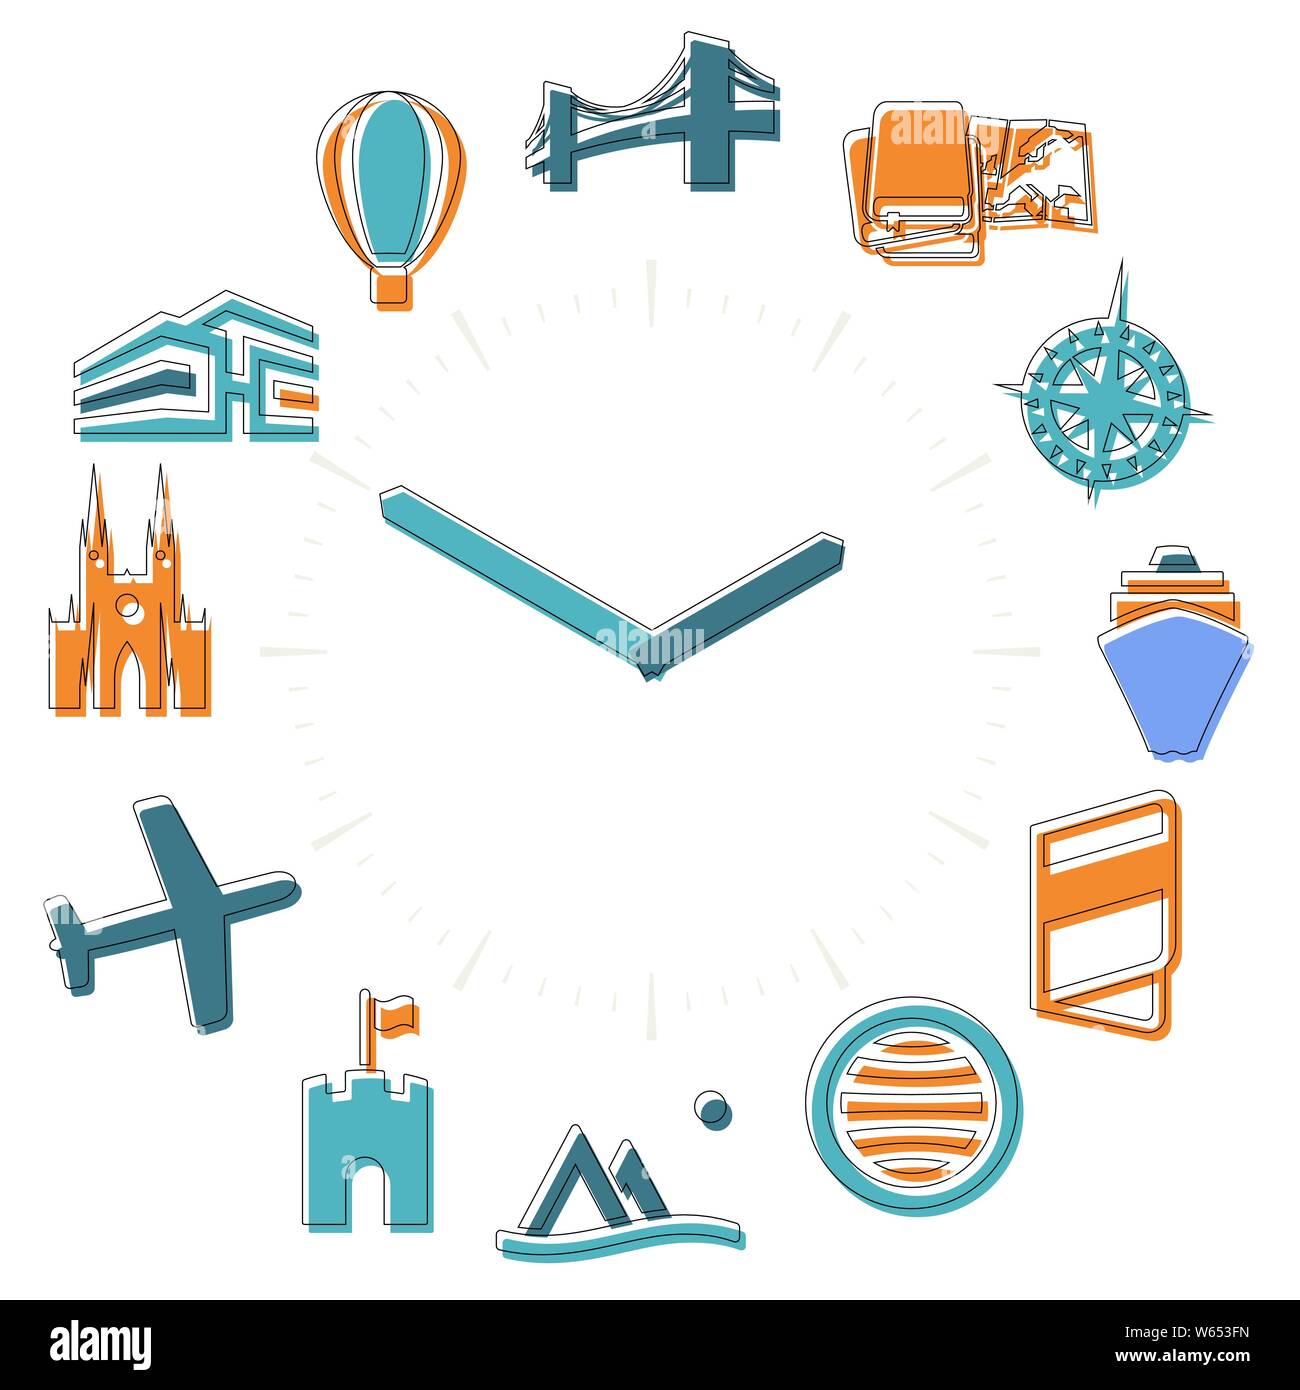 Vector Illustration. Reisezeit. Aktivitäten Symbole in eine Uhr mit Stunden. Stock Vektor